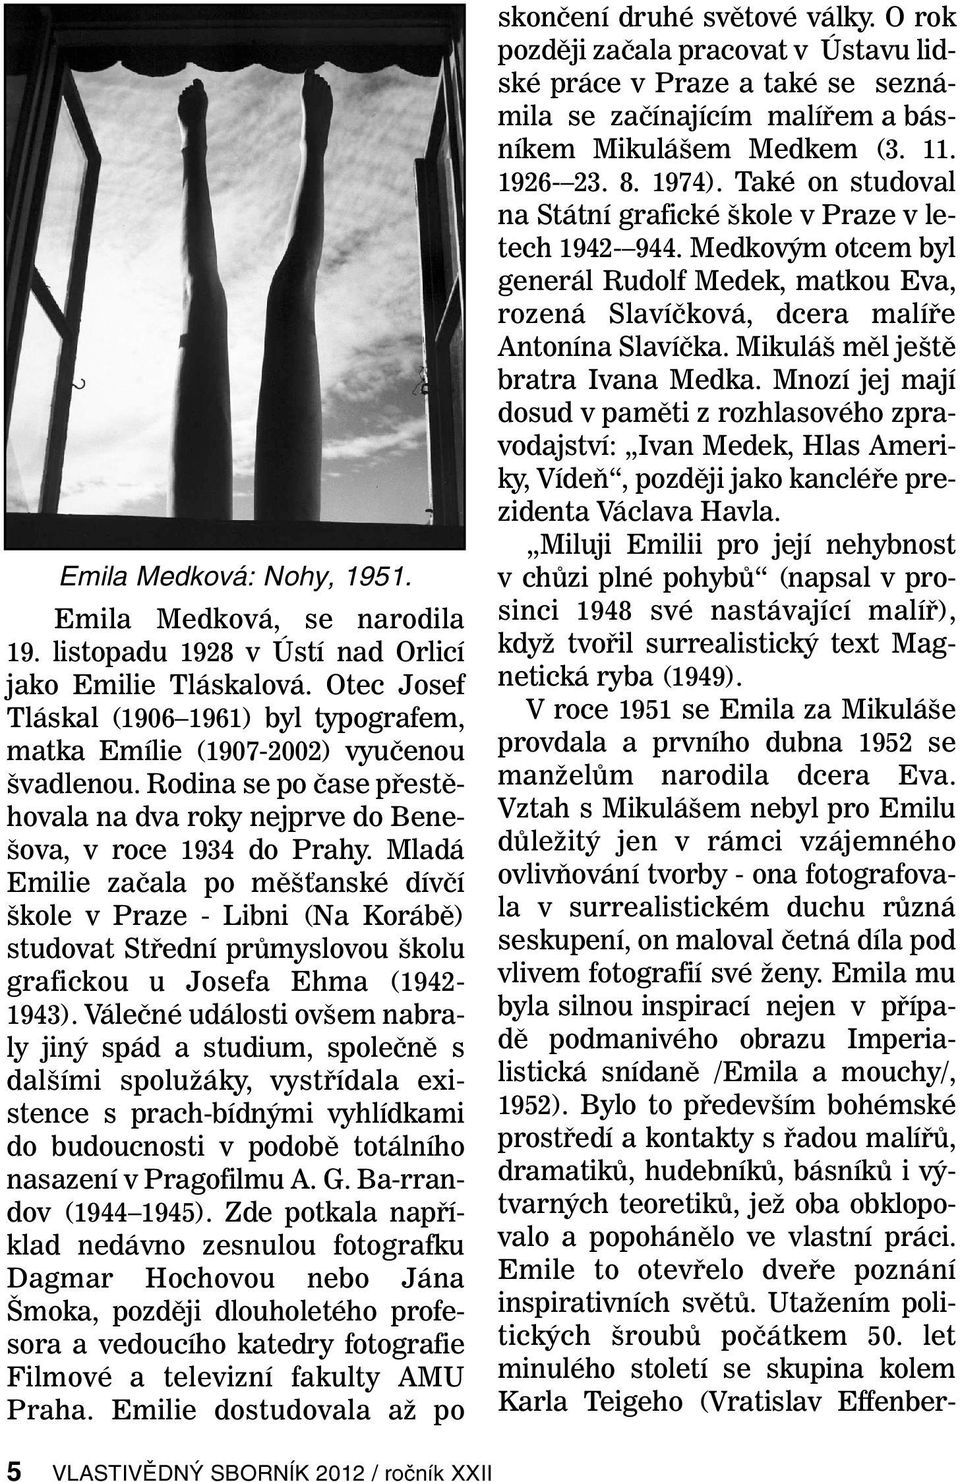 Mladá Emilie začala po měšťanské dívčí škole v Praze - Libni (Na Korábě) studovat Střední průmyslovou školu grafickou u Josefa Ehma (1942-1943).